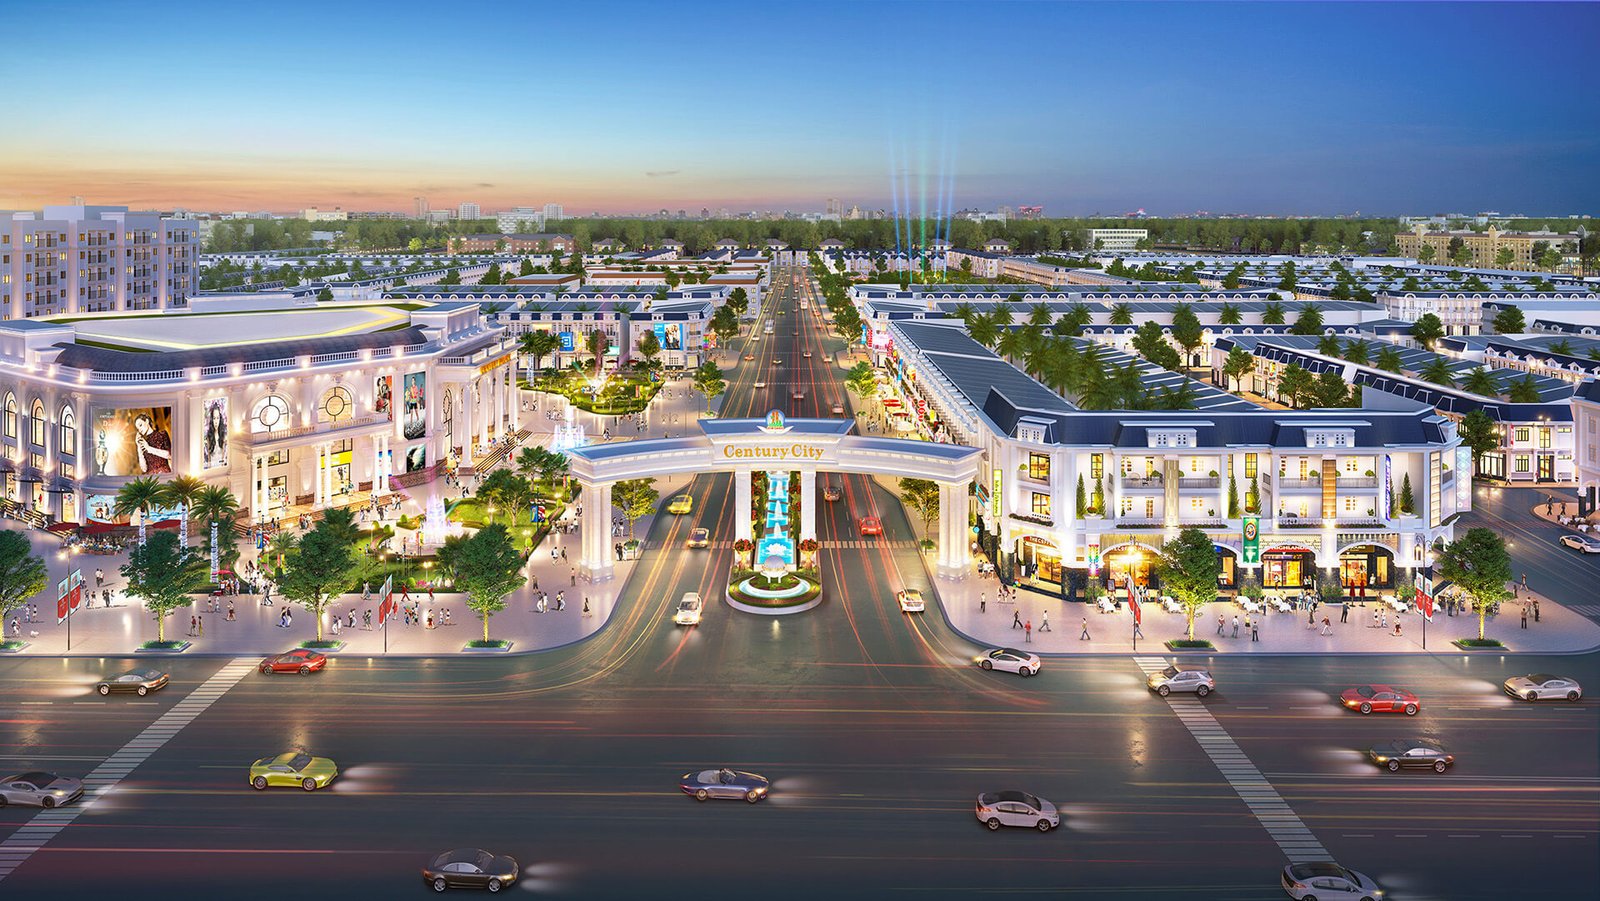 Century City Kim Oanh là dự án bán đất sân bay Long Thành cao cấp và hiện đại